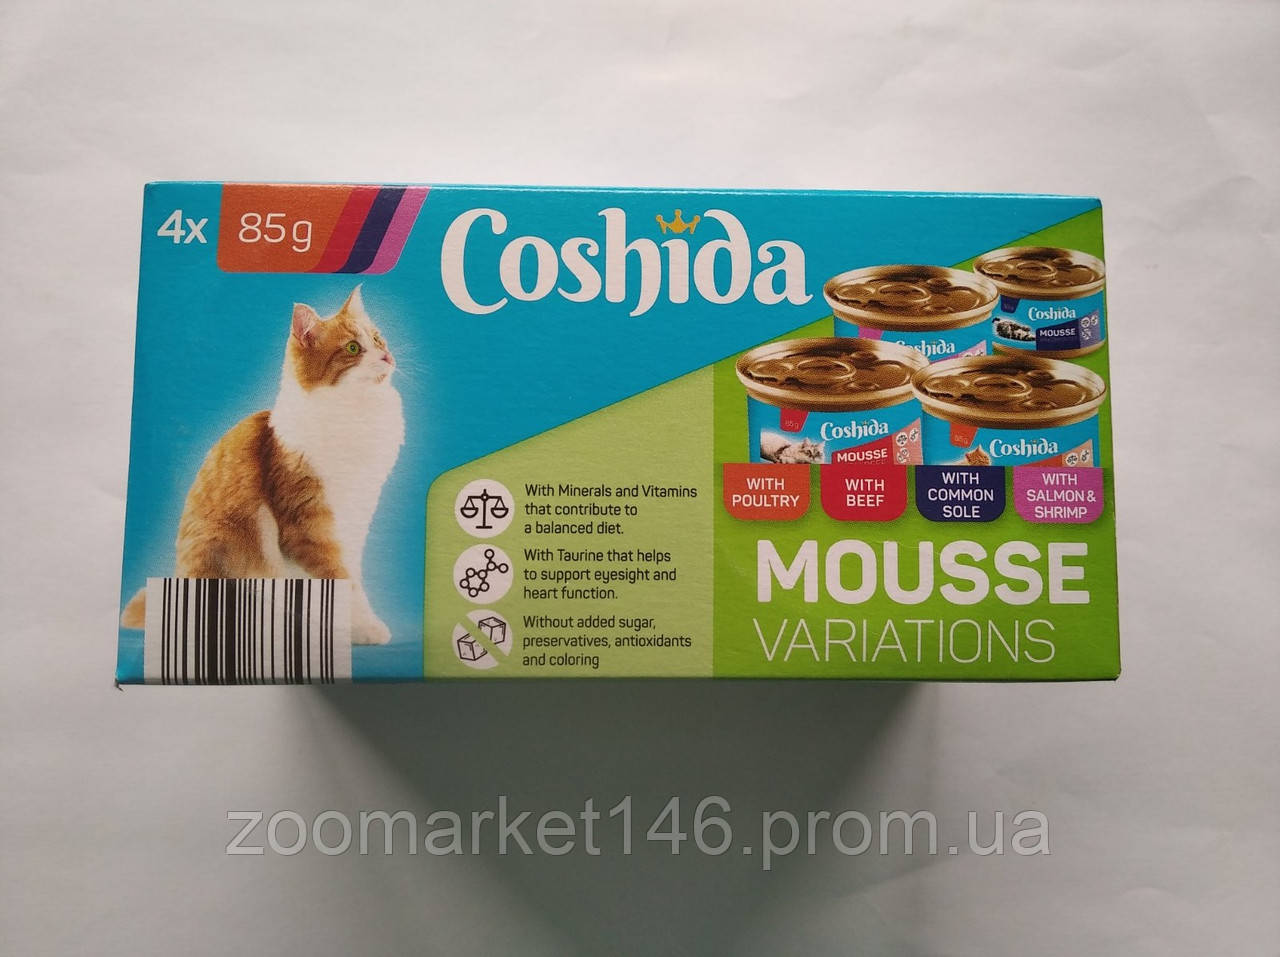 Coshida Mousse Selection, преміум мусси для котів, ассорті смаків, 4 х 85 г